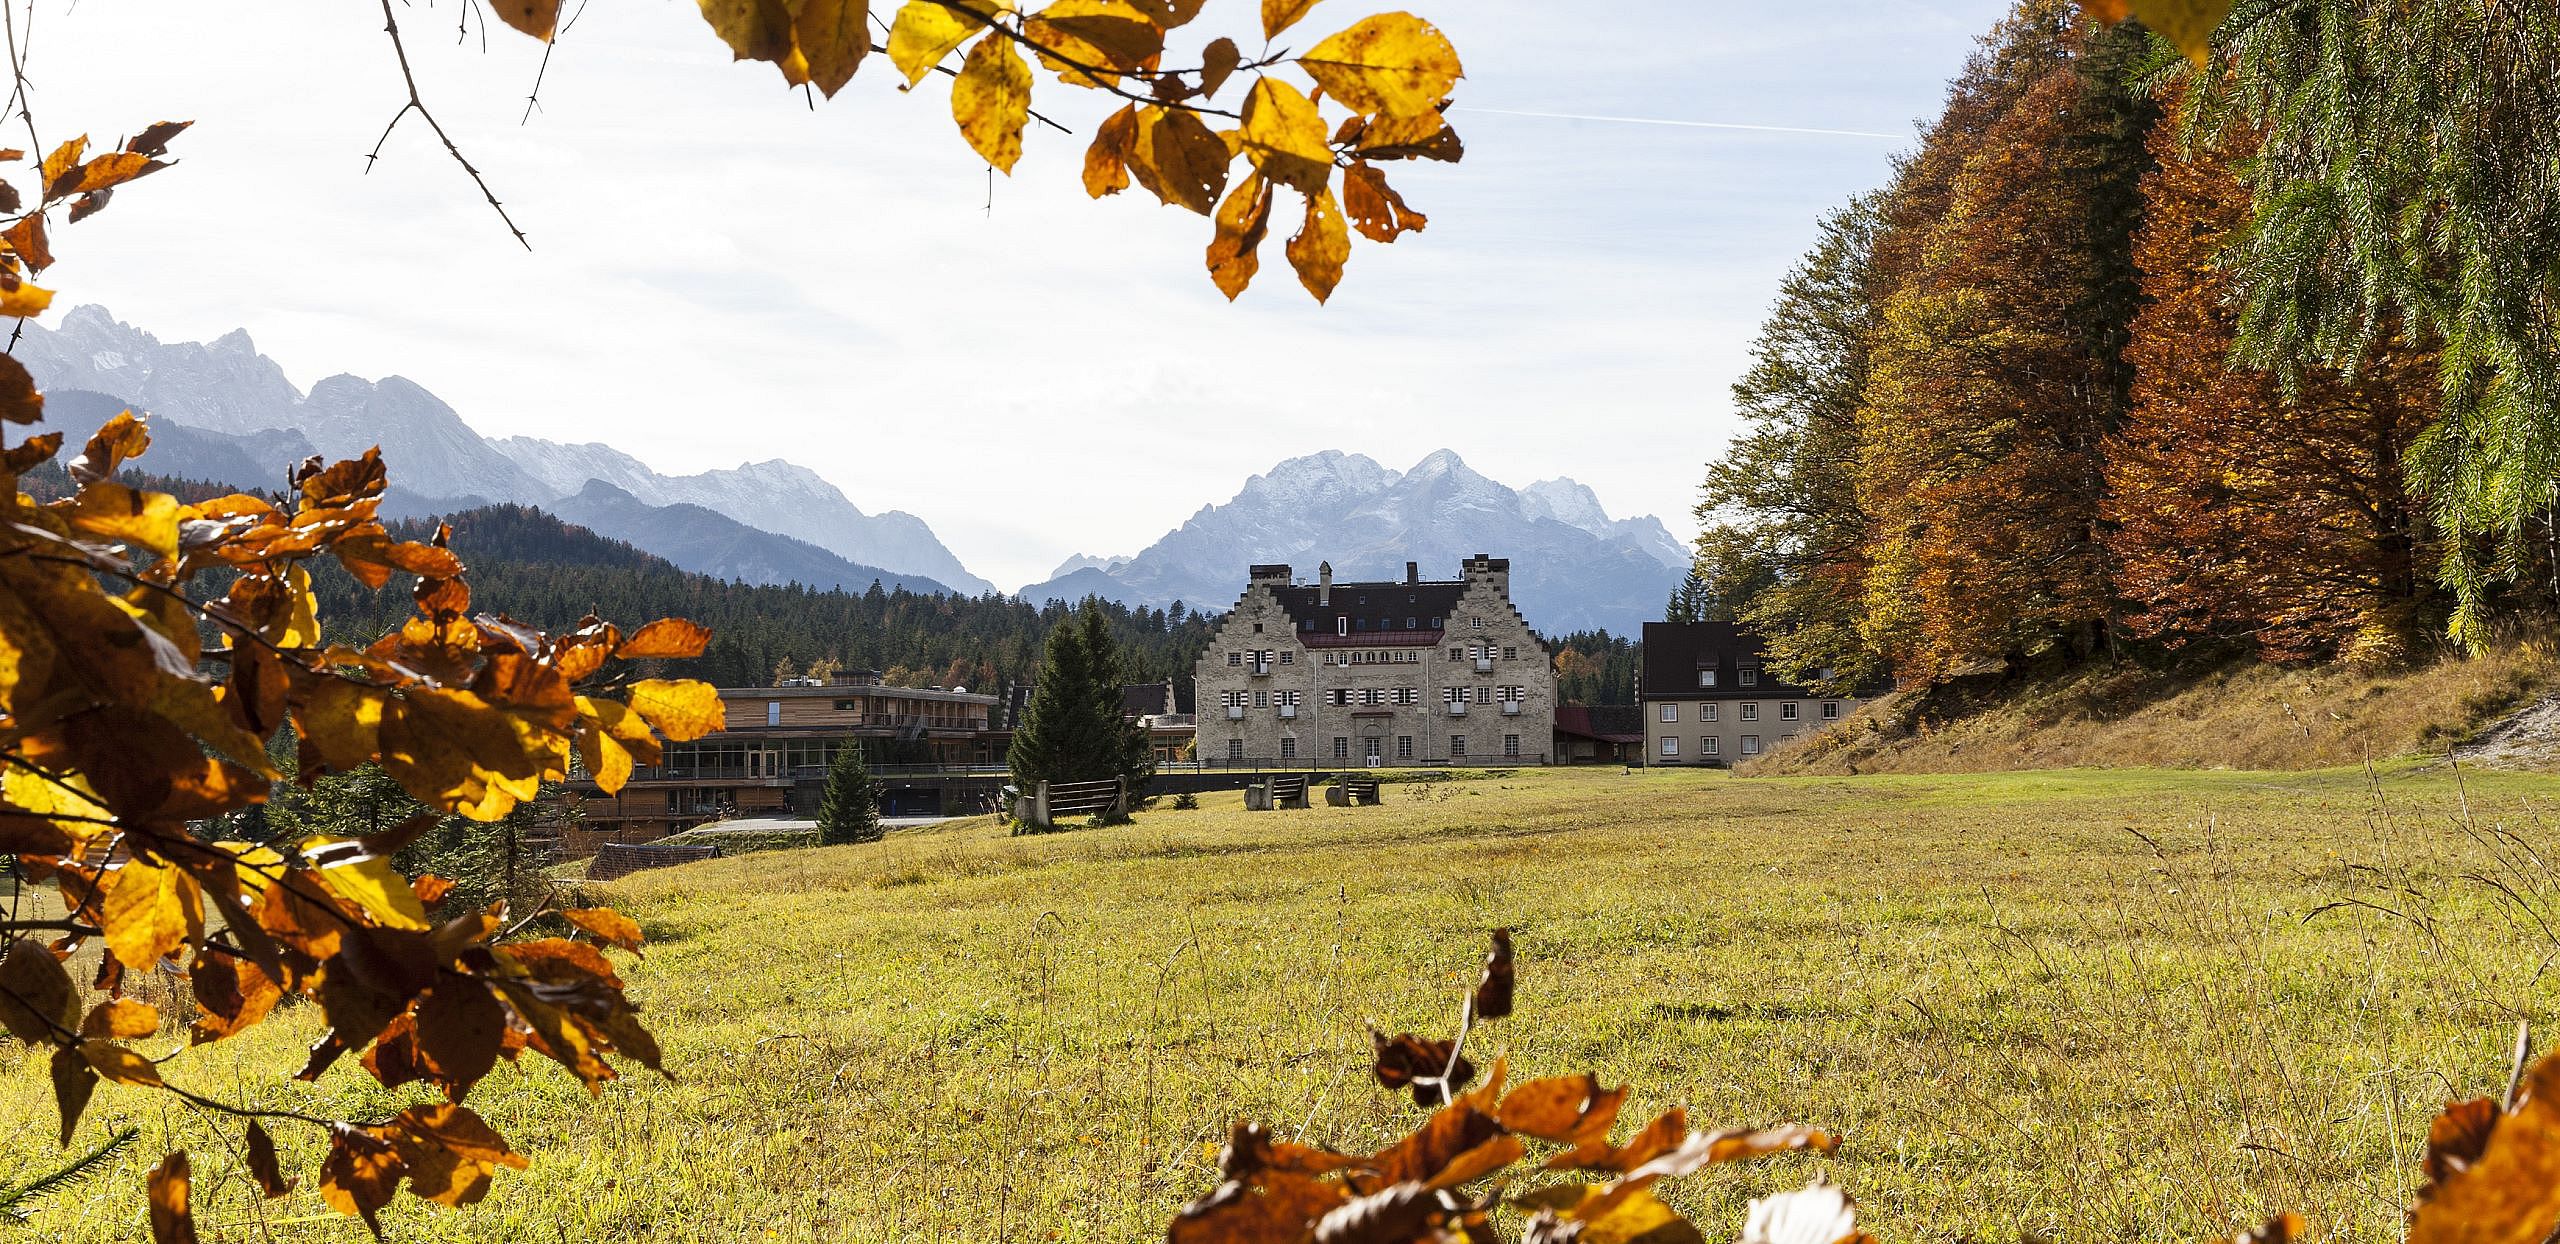 Das Hotel Kranzbach umgeben vom schönen Herbst